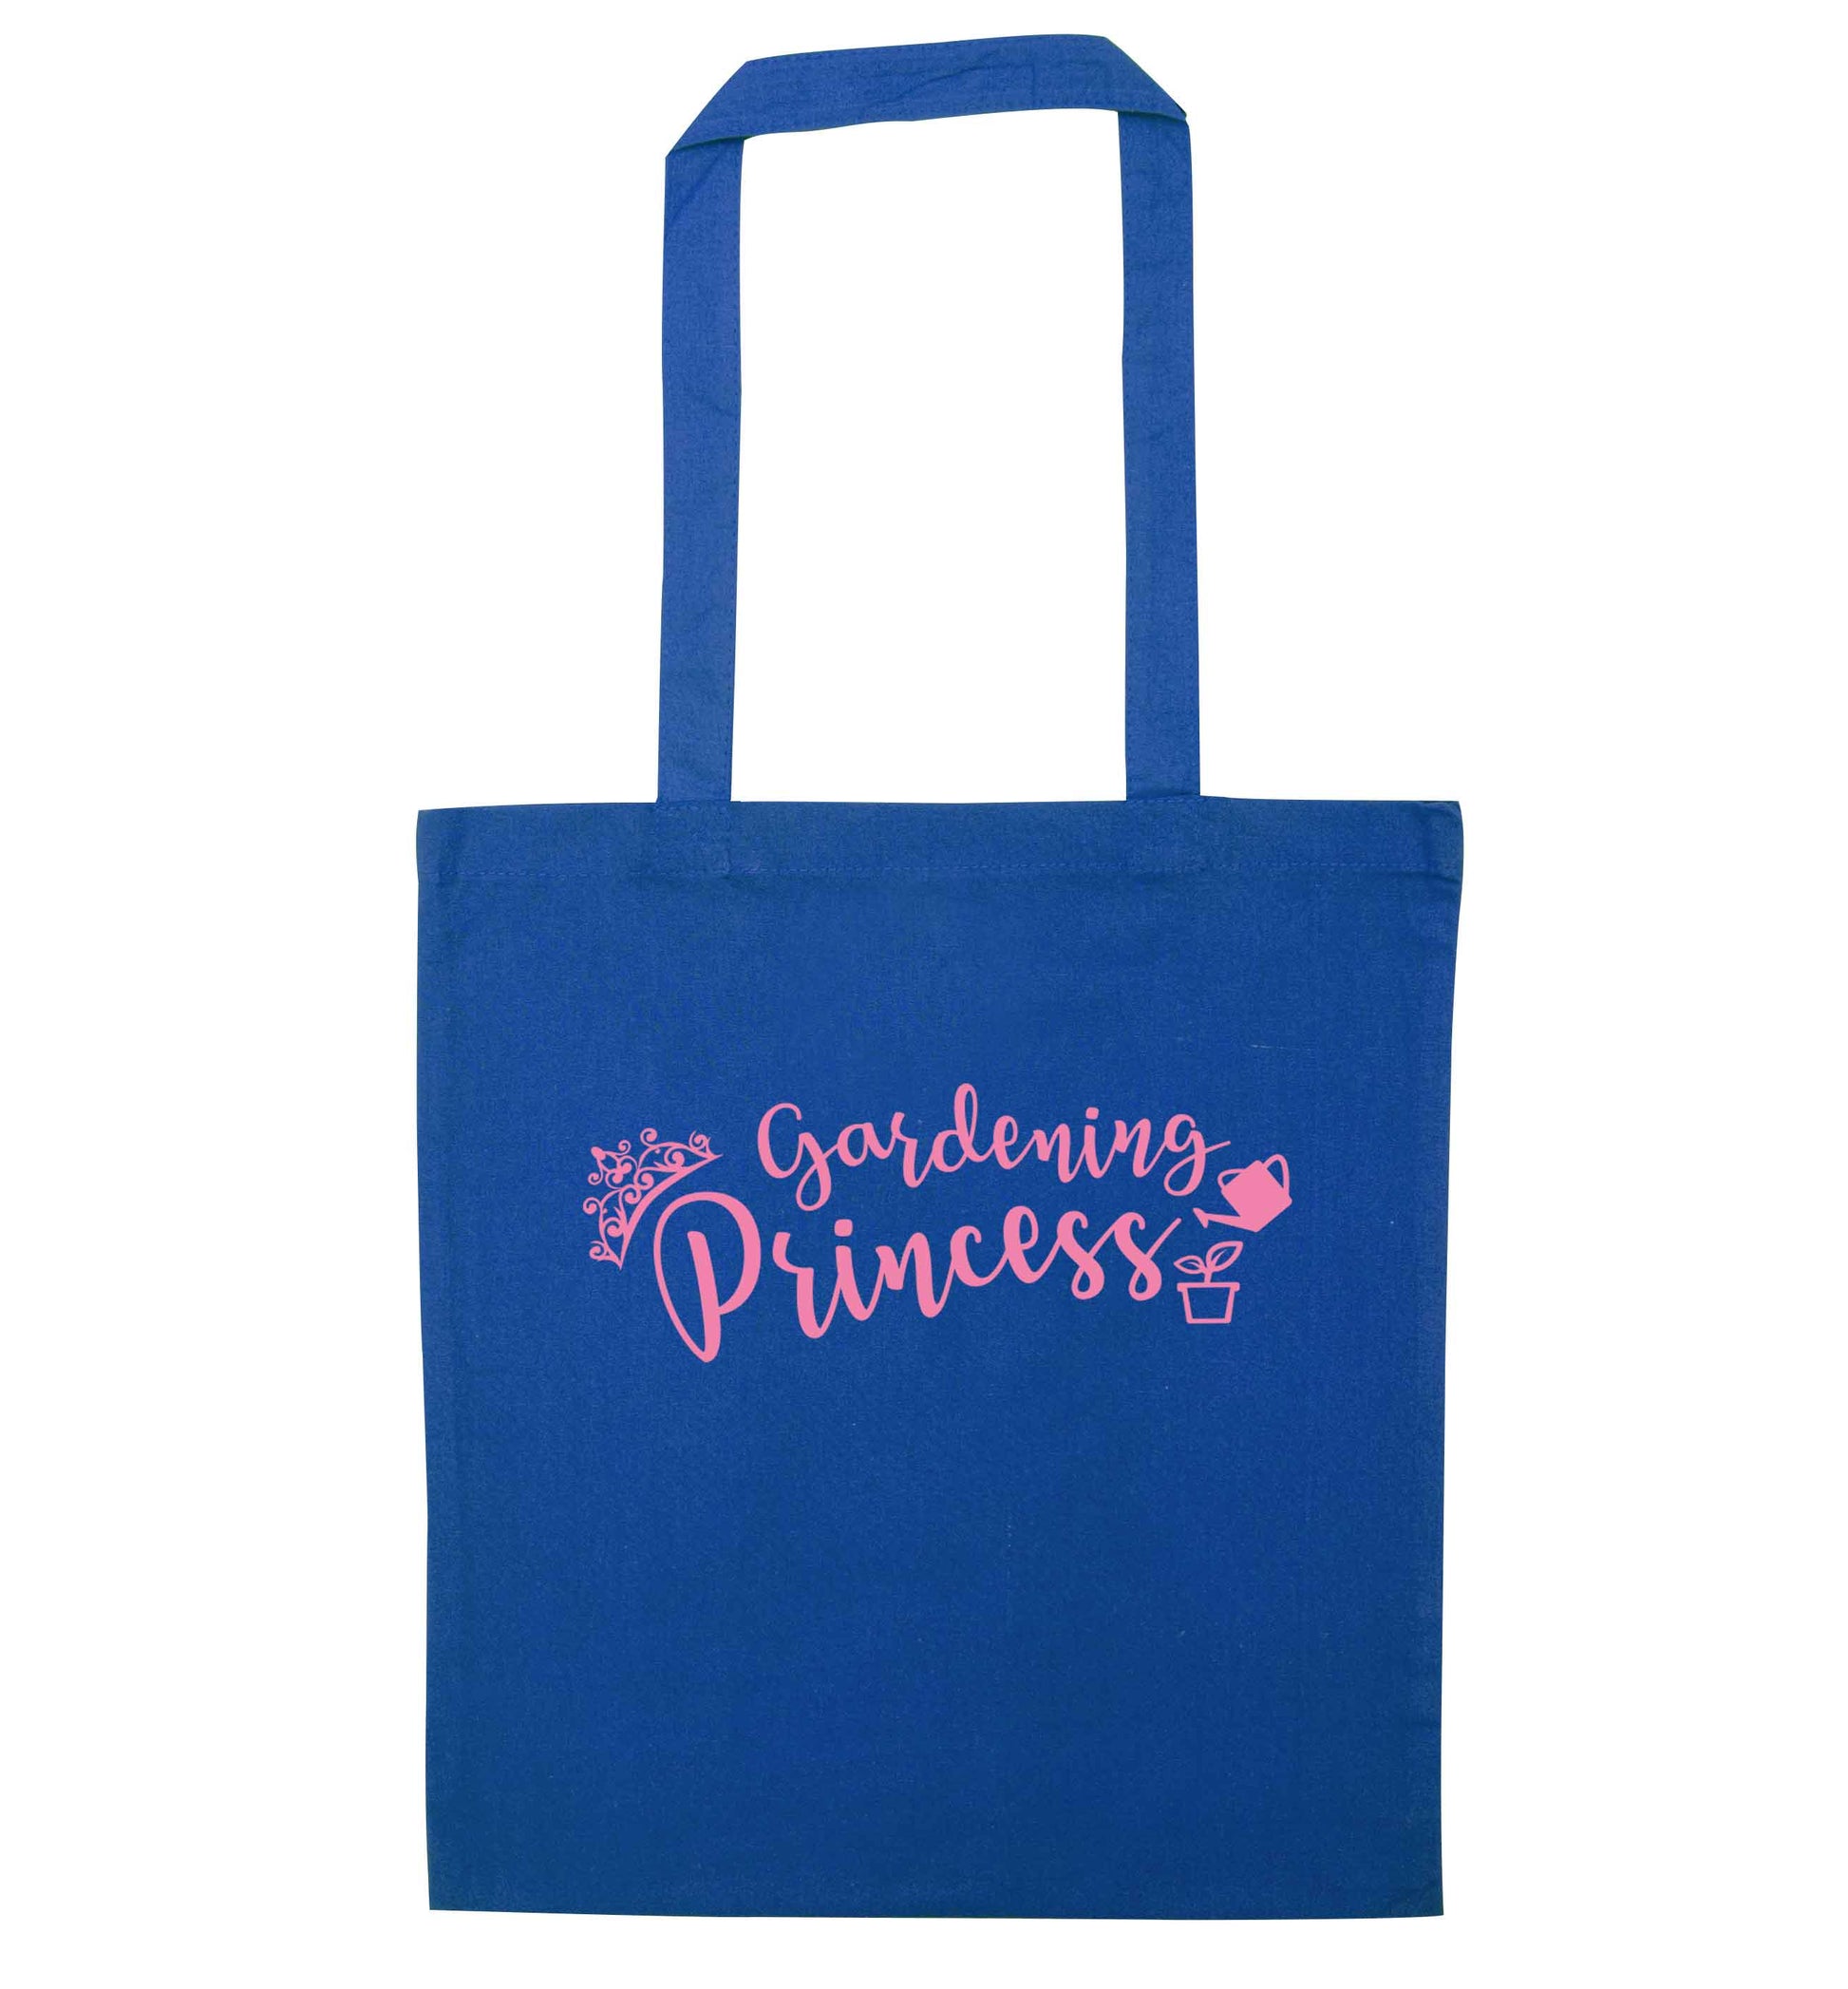 Gardening princess blue tote bag